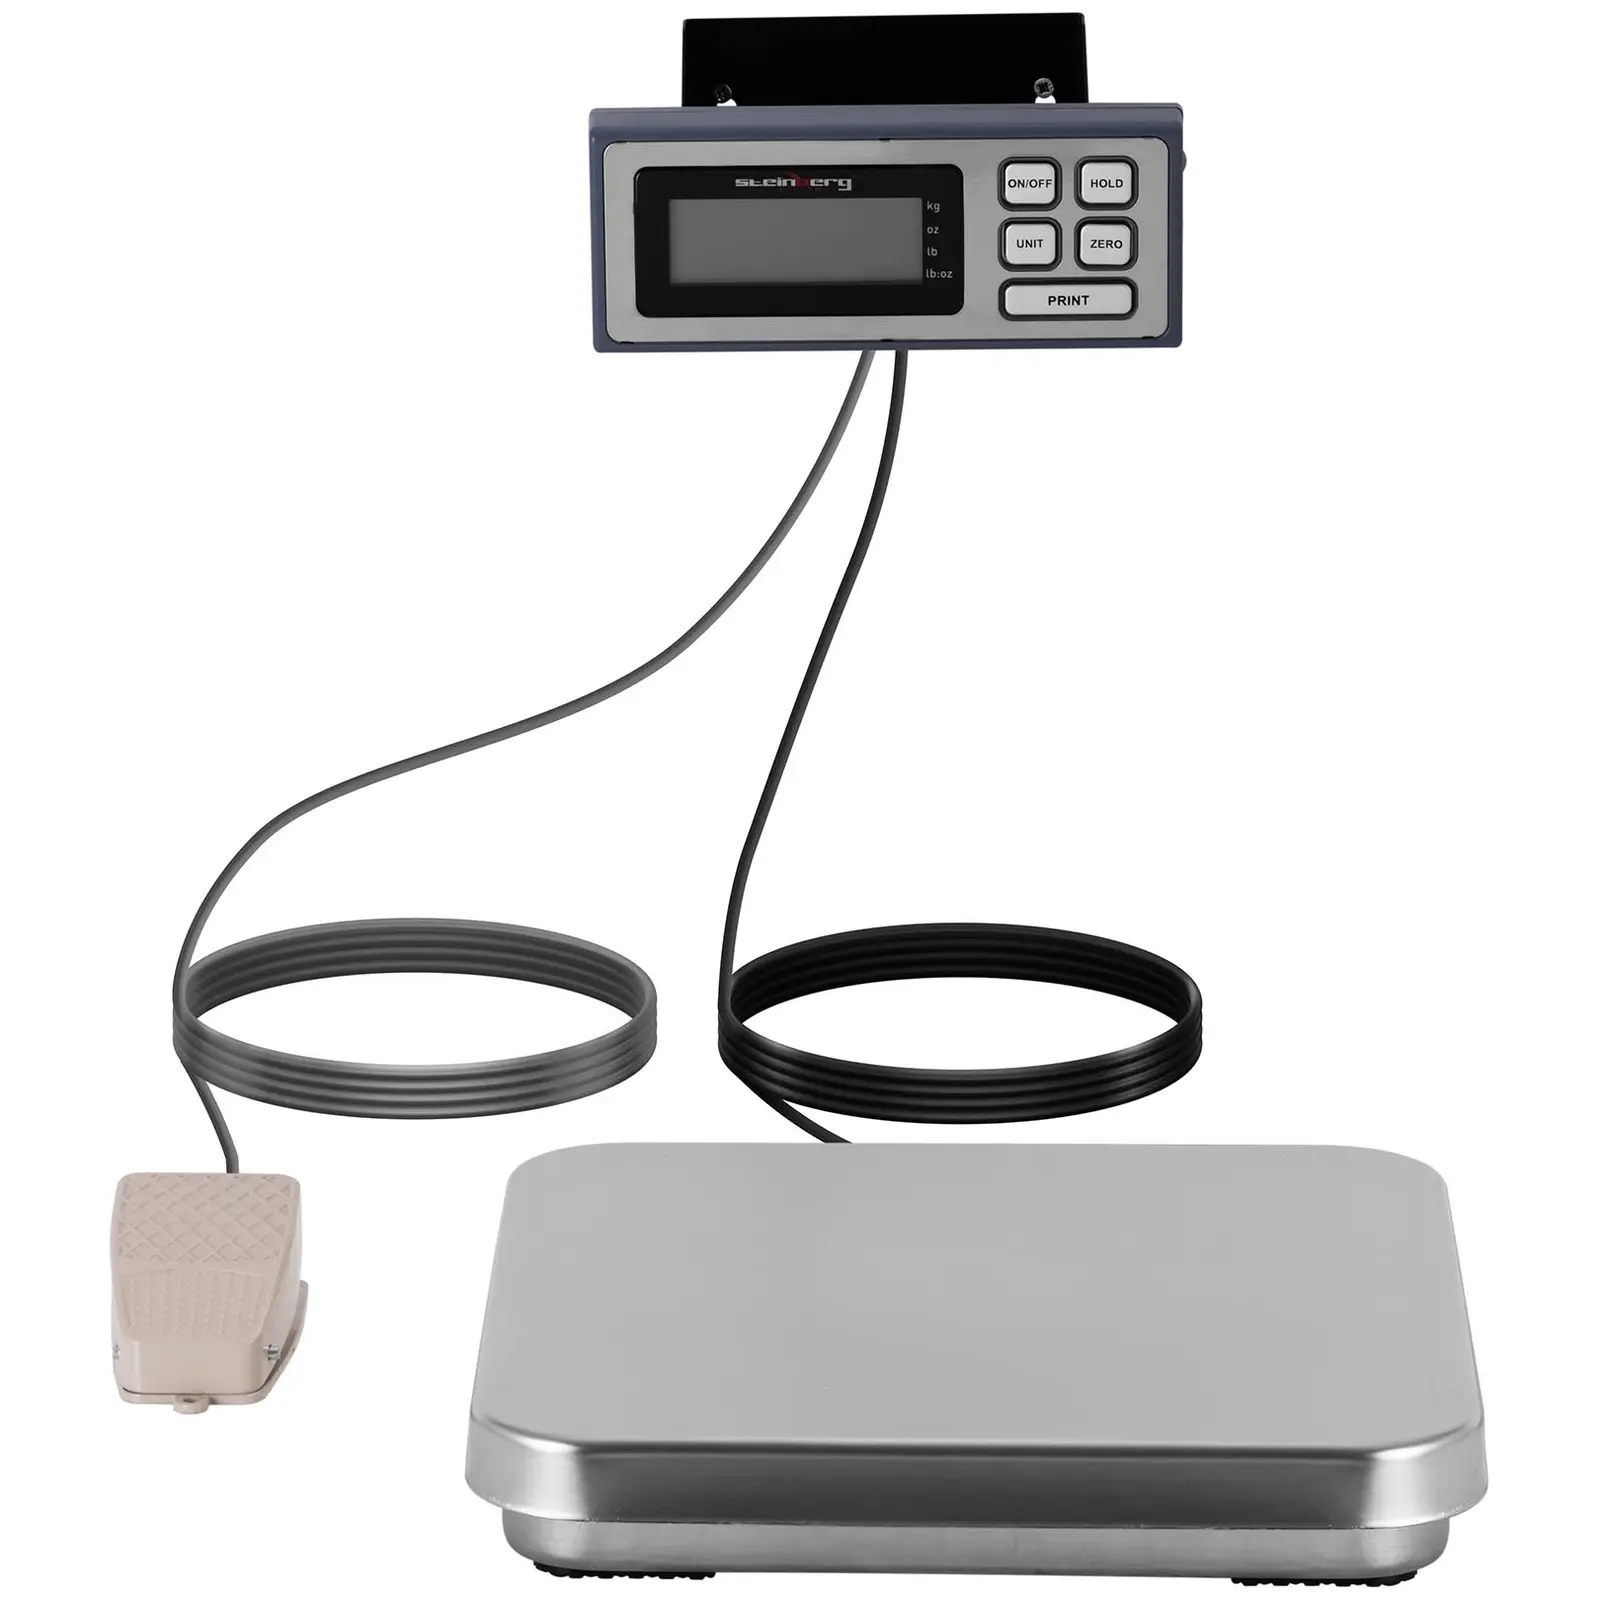 Balança de cozinha - pedal - 10 kg / 2 g - 320 x 310 mm - LCD